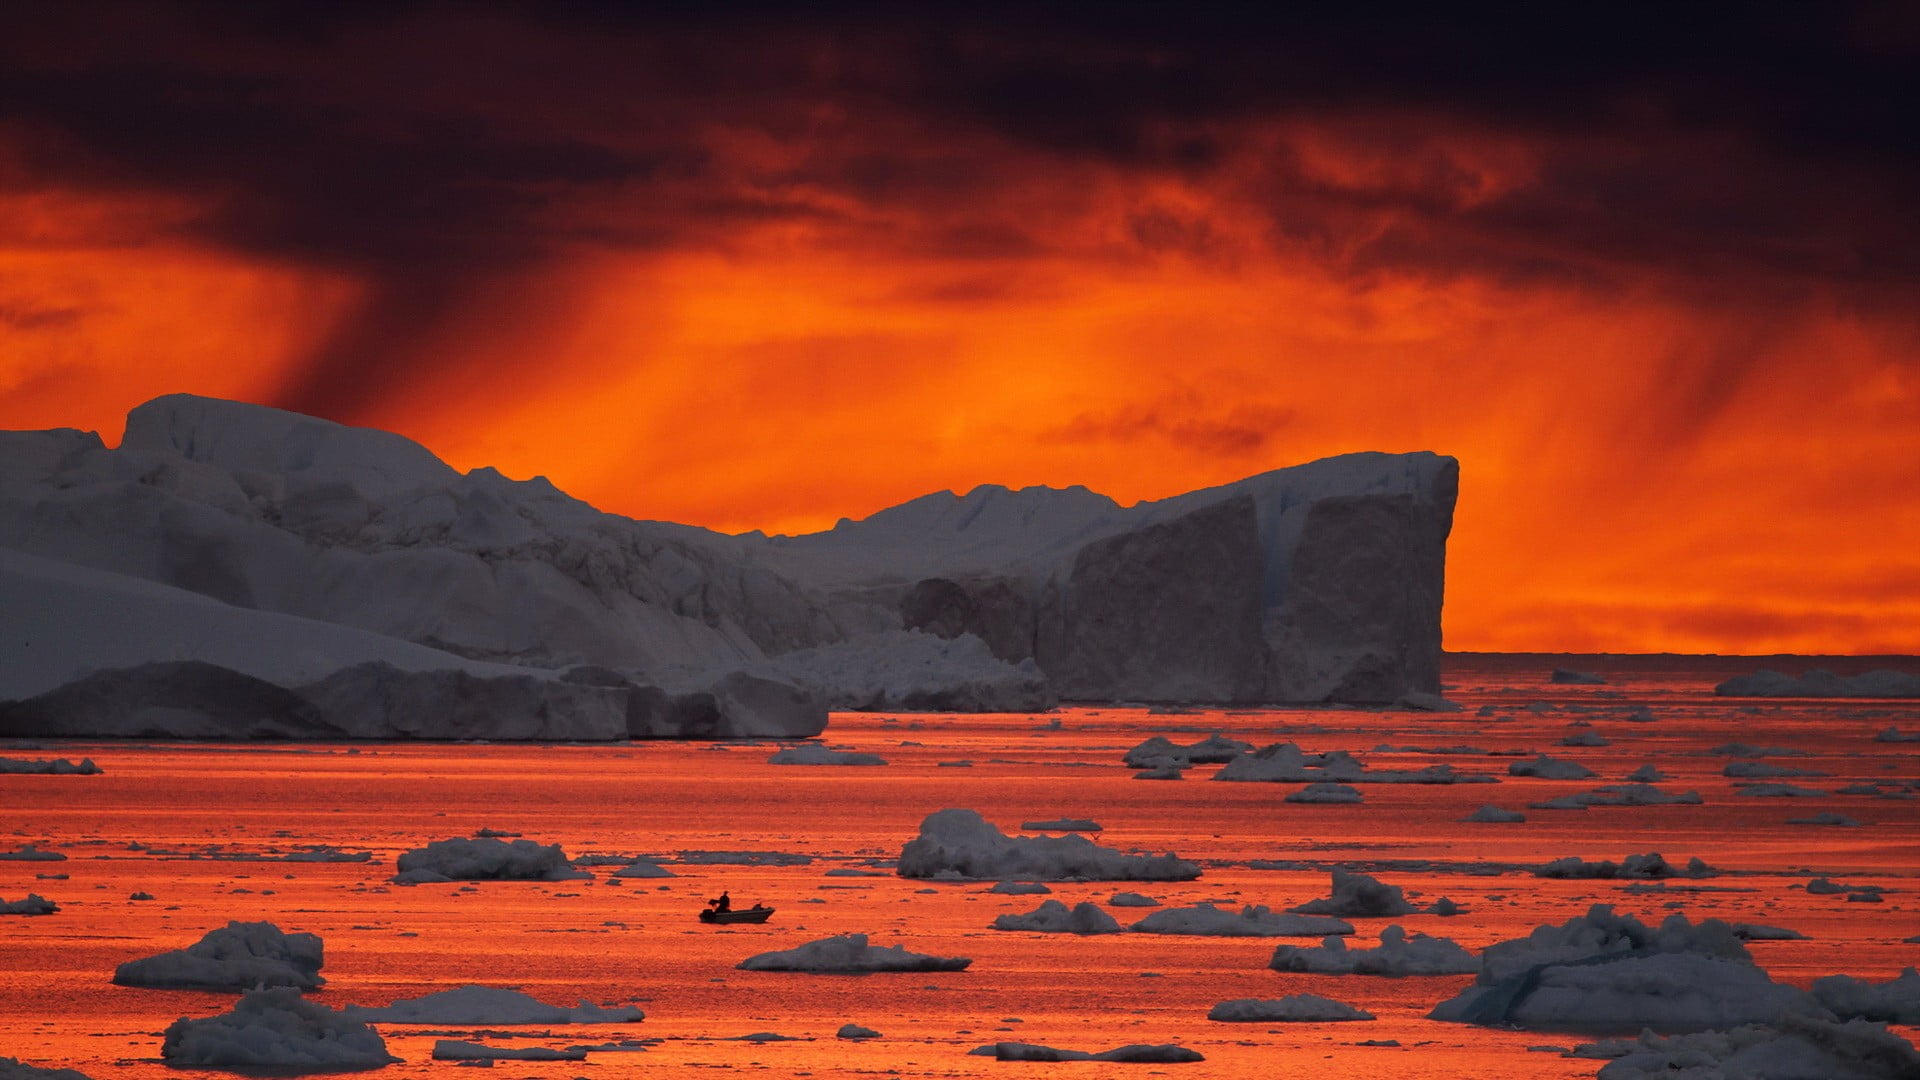 White iceberg, landscape, snow, nature, sunset HD wallpaper | Wallpaper ...